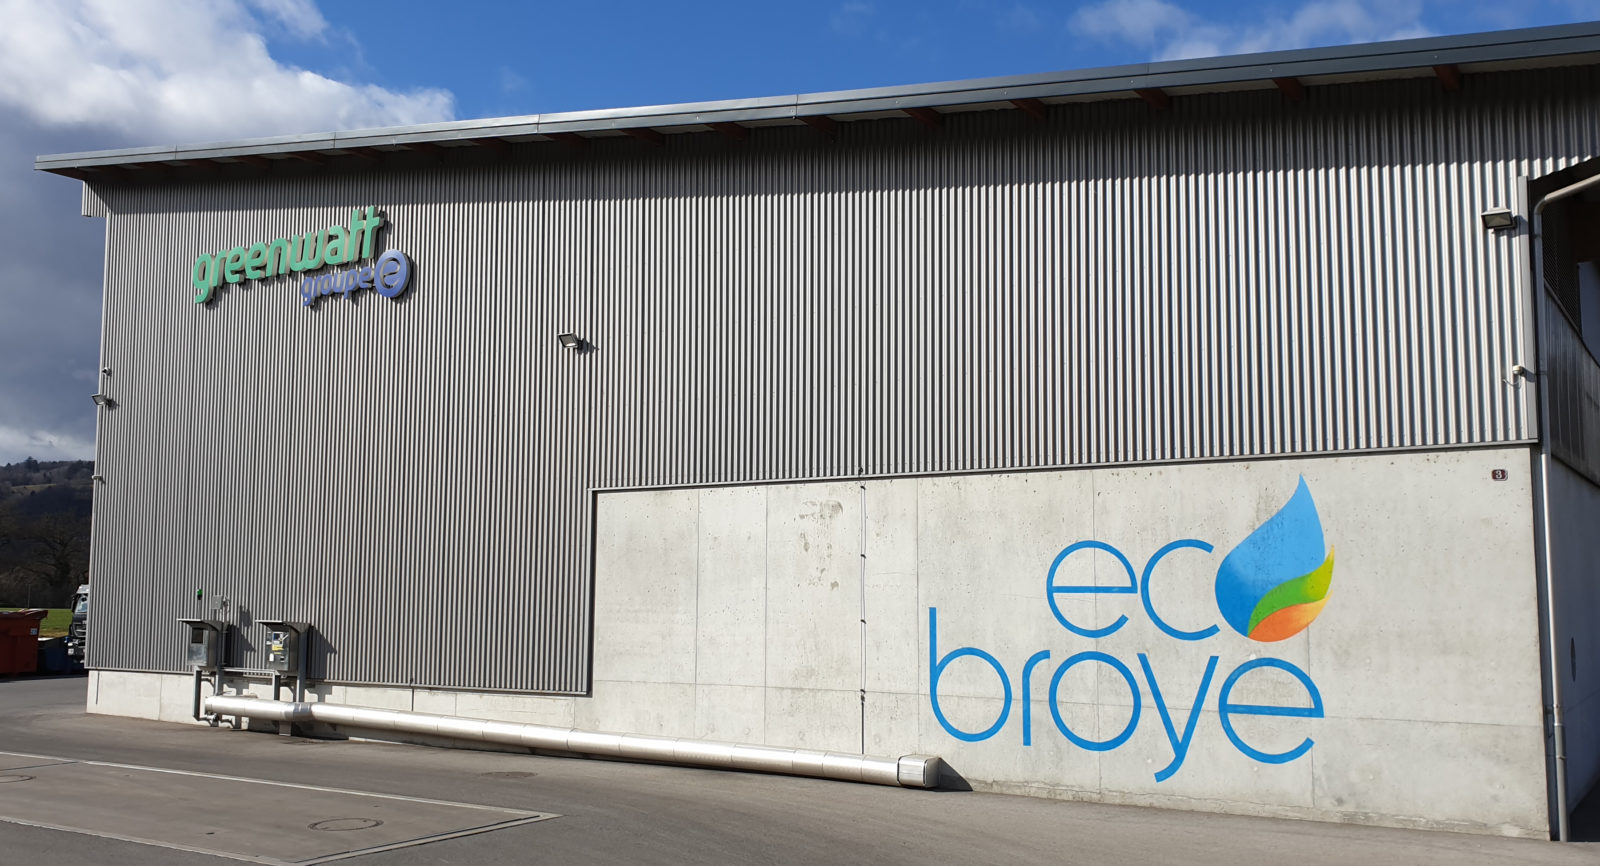 Das Programm ECO-Broye war wesentlicher Treiber einer integralen Nutzung lokaler, erneuerbarer Ressourcen.